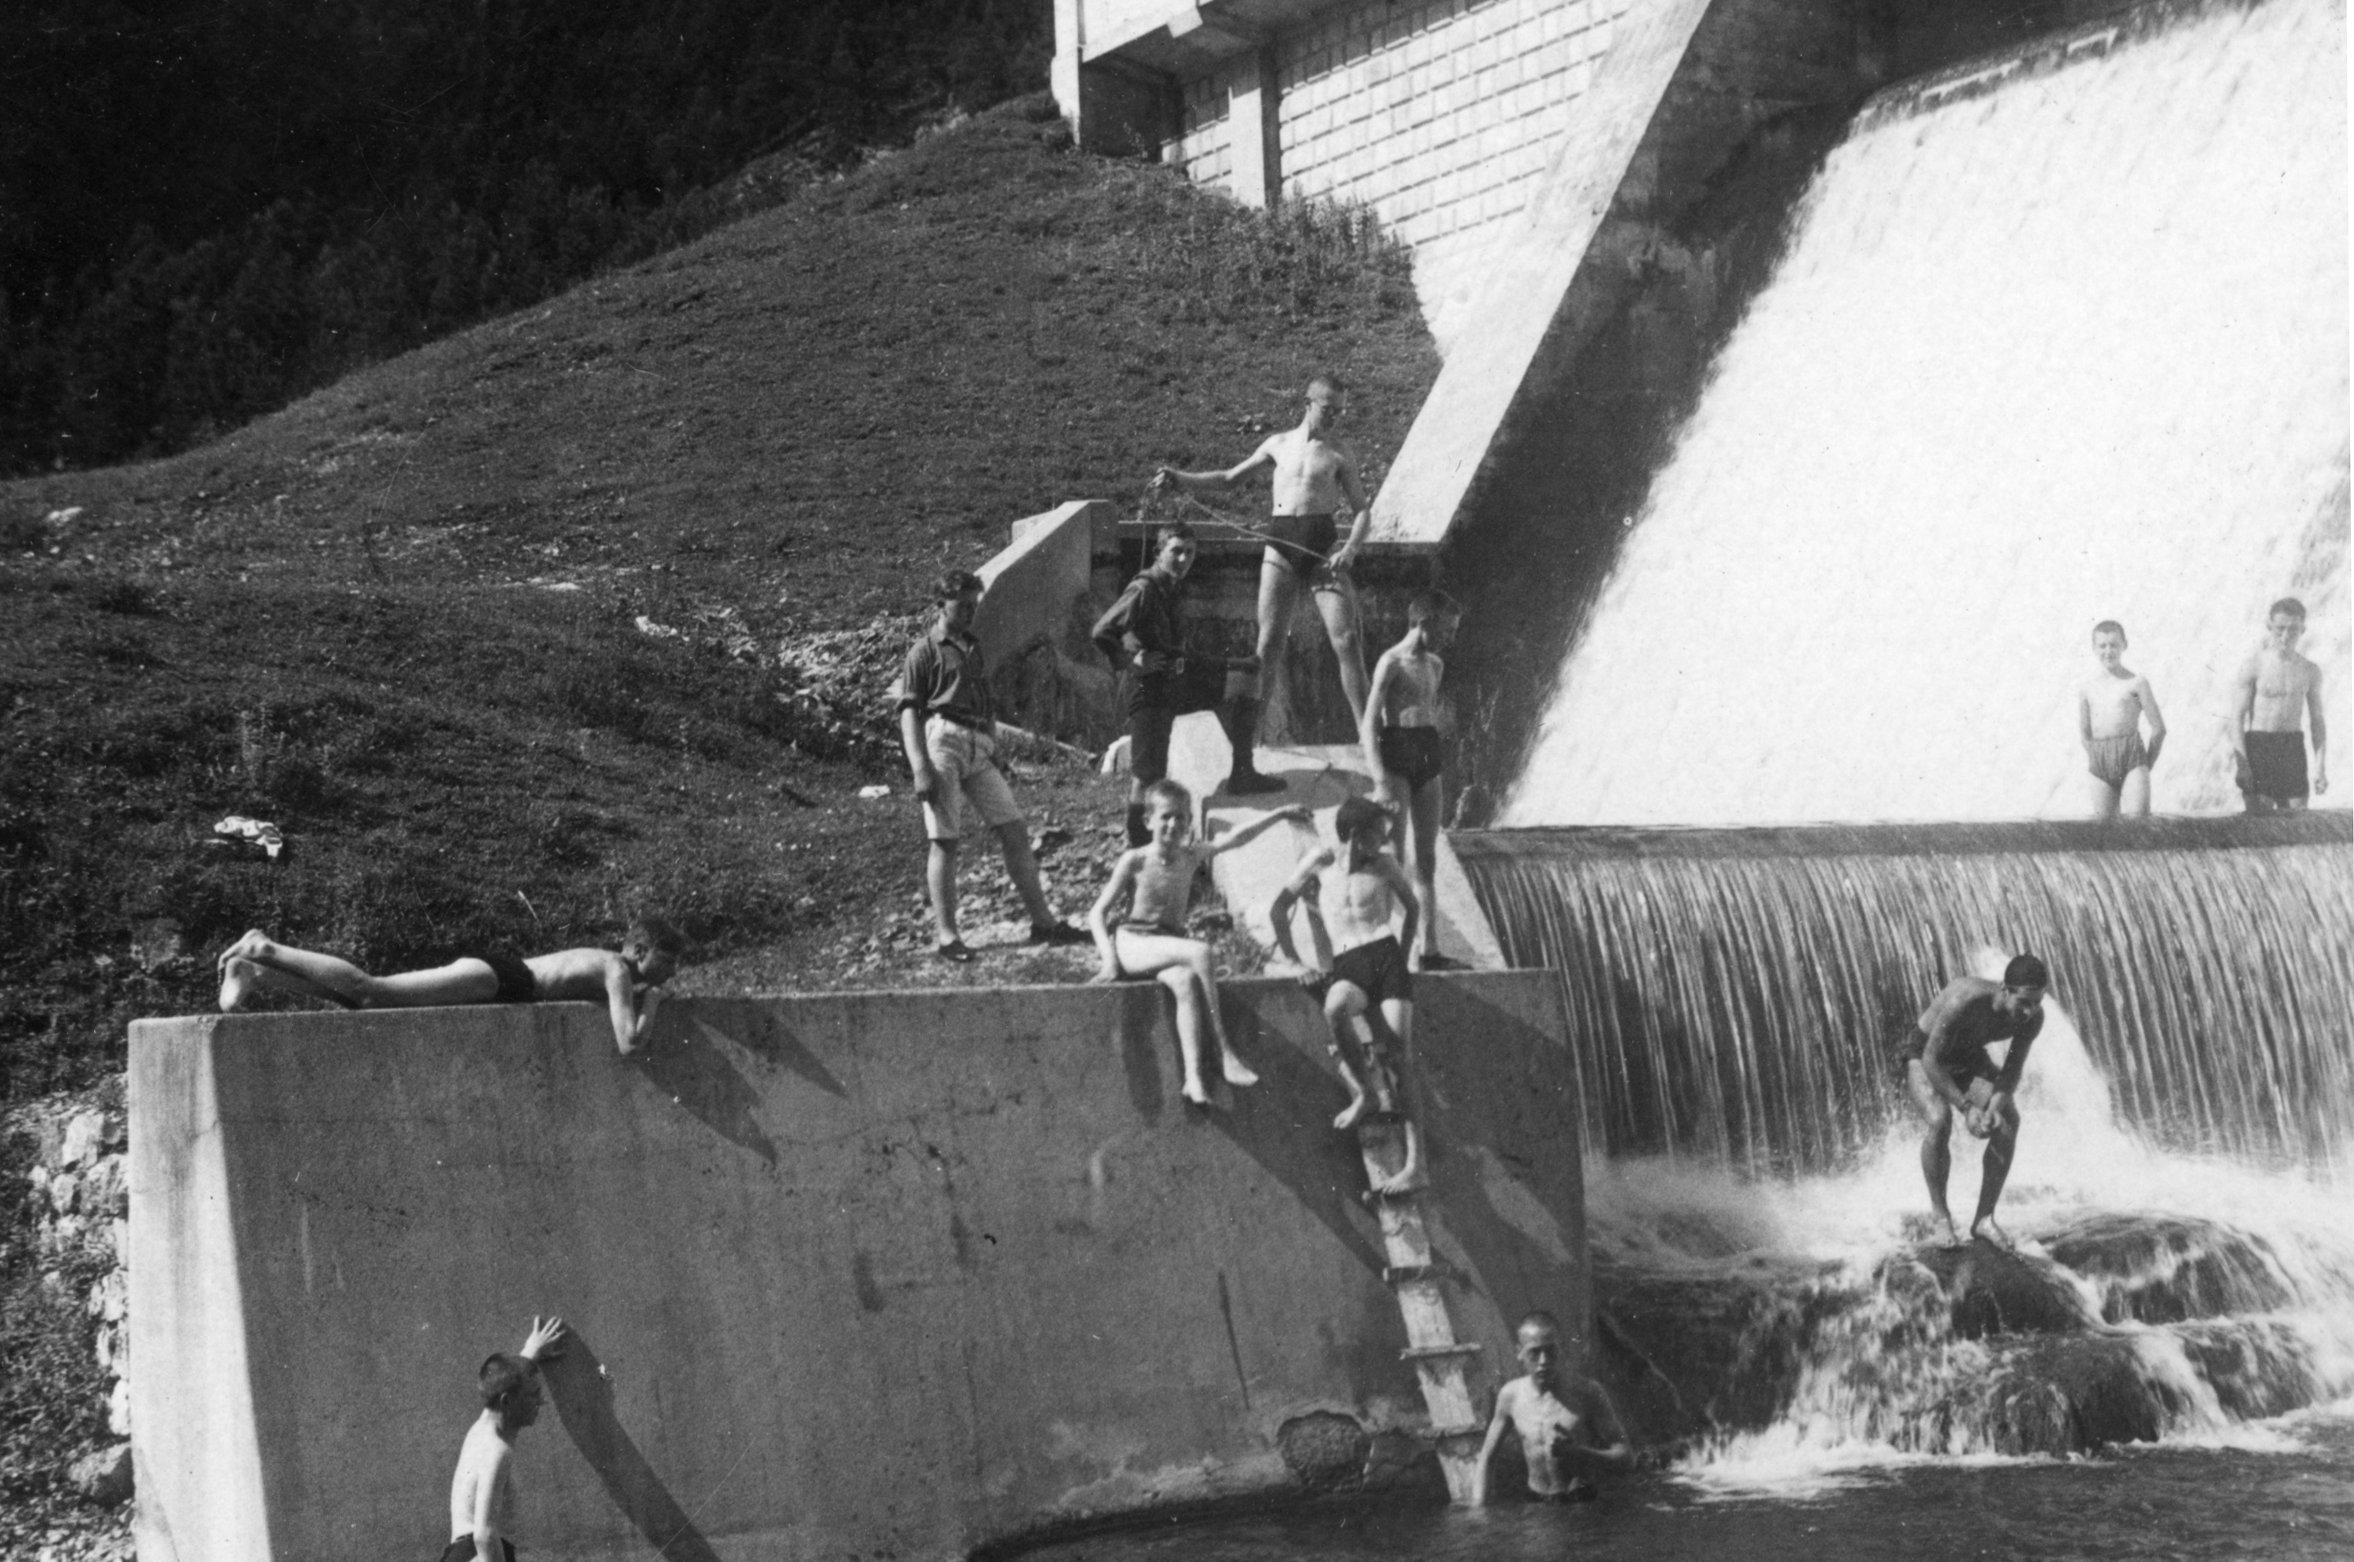  Kinder und Jugendliche in Wasser neben Wasserwerk